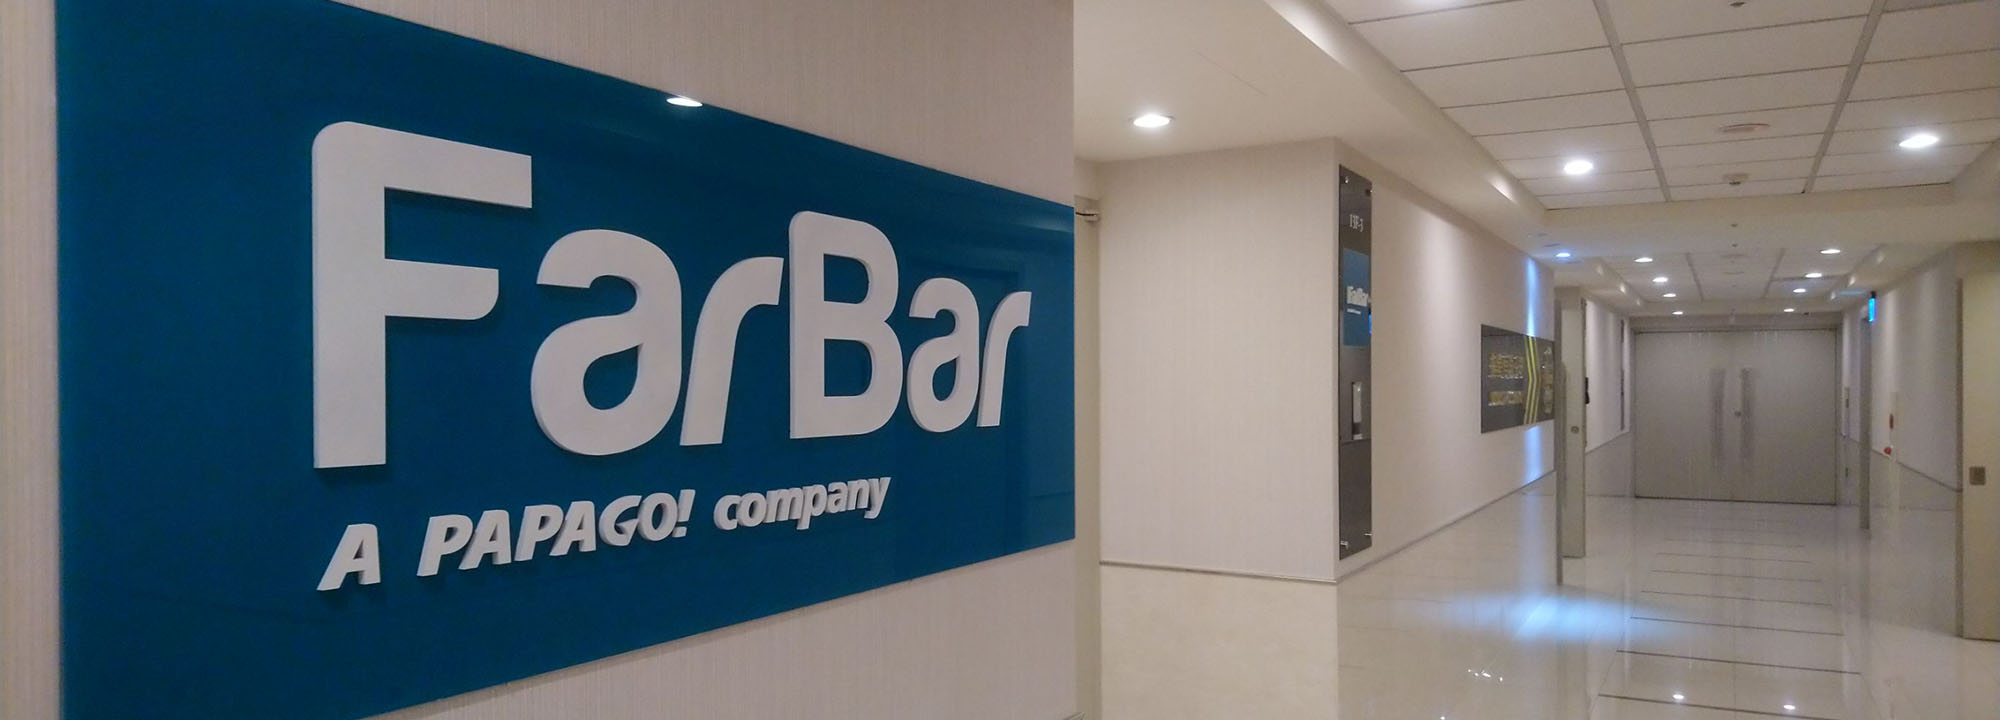 FarBar廣告機-自有組裝工廠